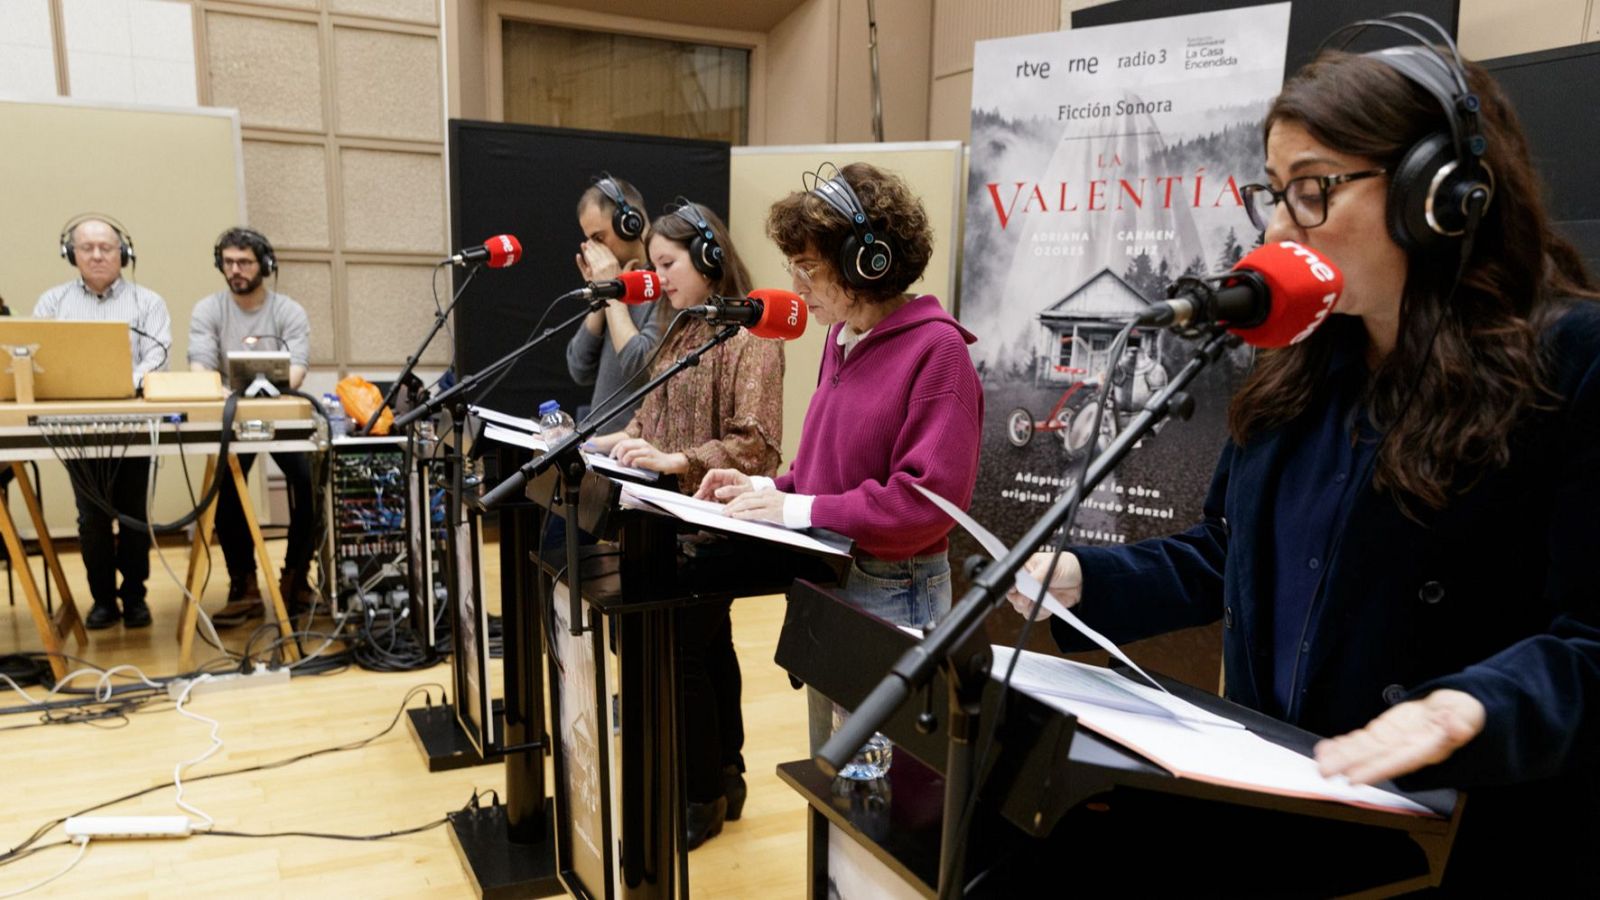 RNE estrena 'La valentía', la nueva ficción sonora con la Fundación Montemadrid